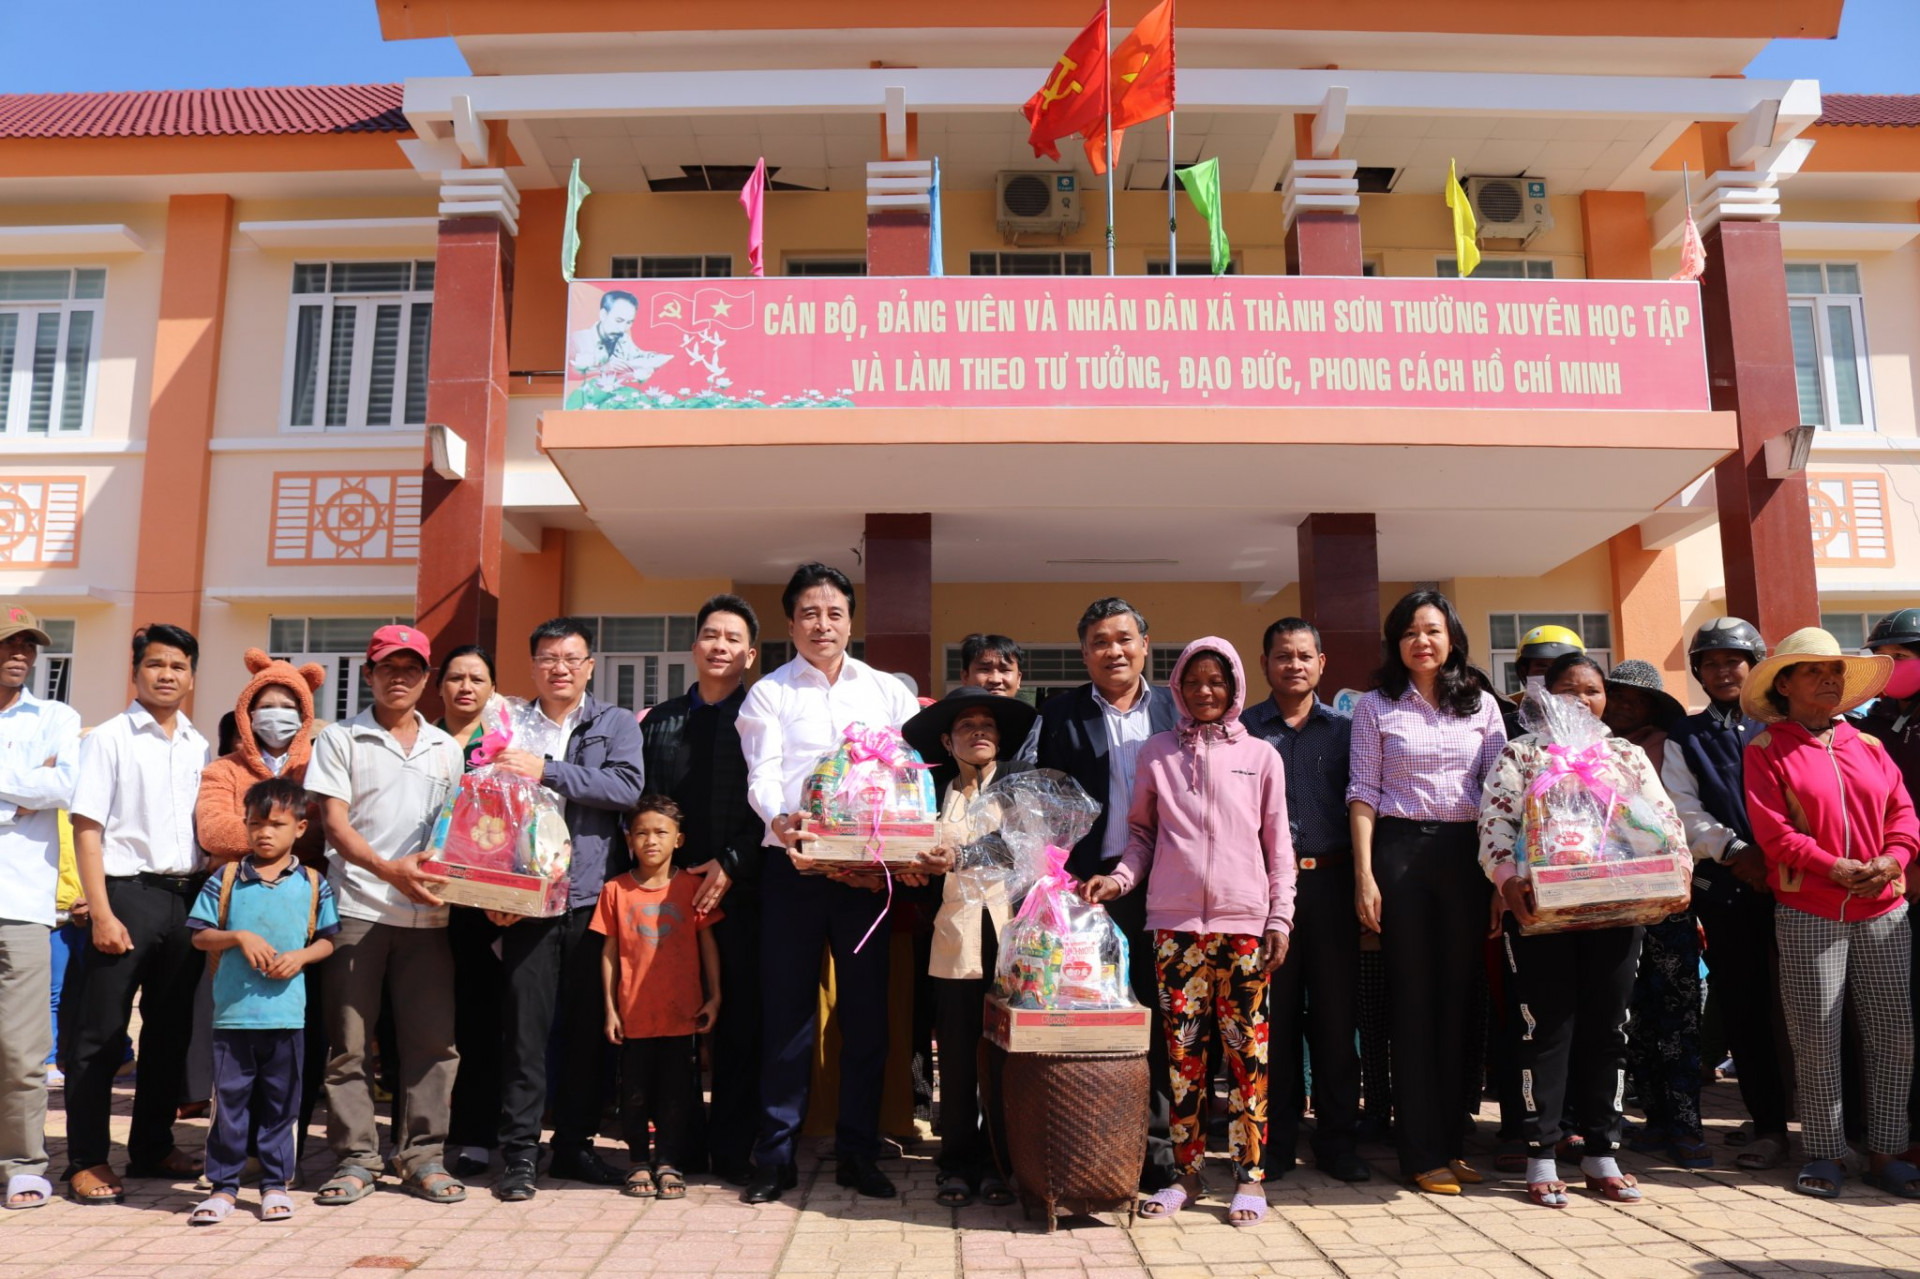 Ông Nguyễn Khắc Toàn và các nhà tài trợ tặng qùa Tết cho người nghèo xã Thành Sơn, Huyện Khánh Sơn.